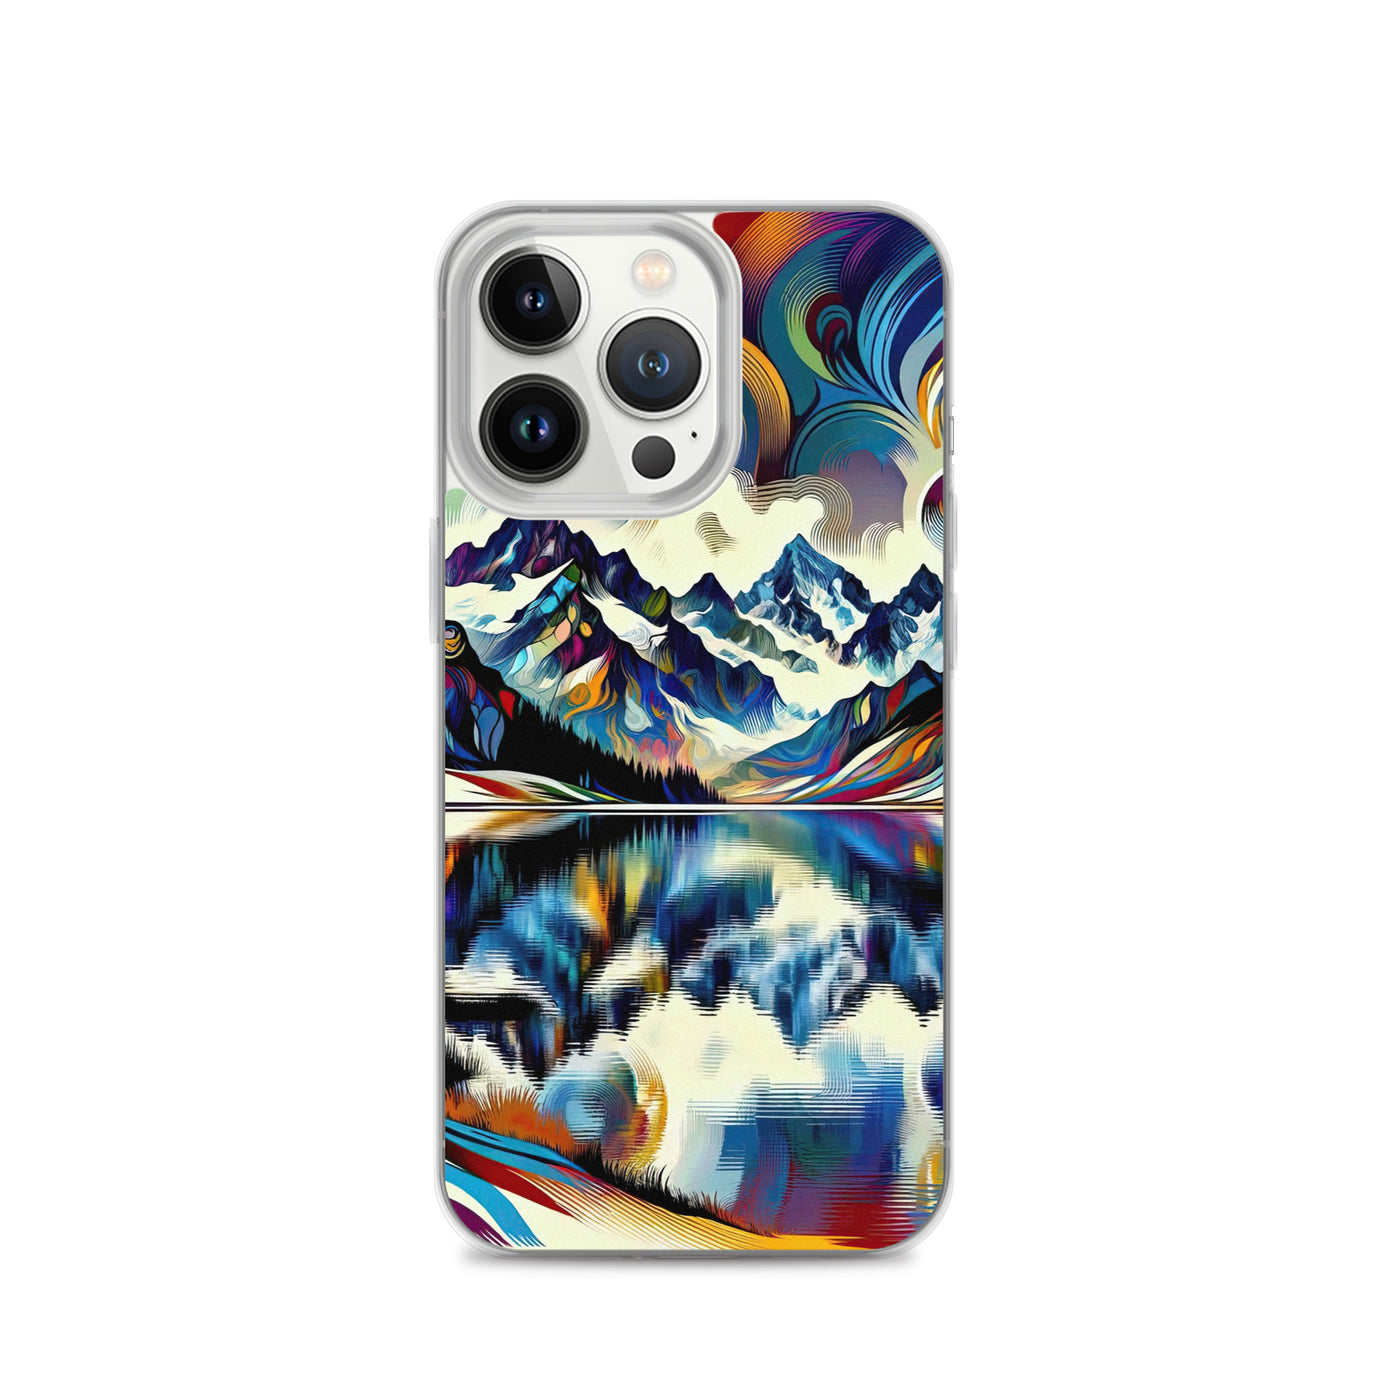 Alpensee im Zentrum eines abstrakt-expressionistischen Alpen-Kunstwerks - iPhone Schutzhülle (durchsichtig) berge xxx yyy zzz iPhone 13 Pro